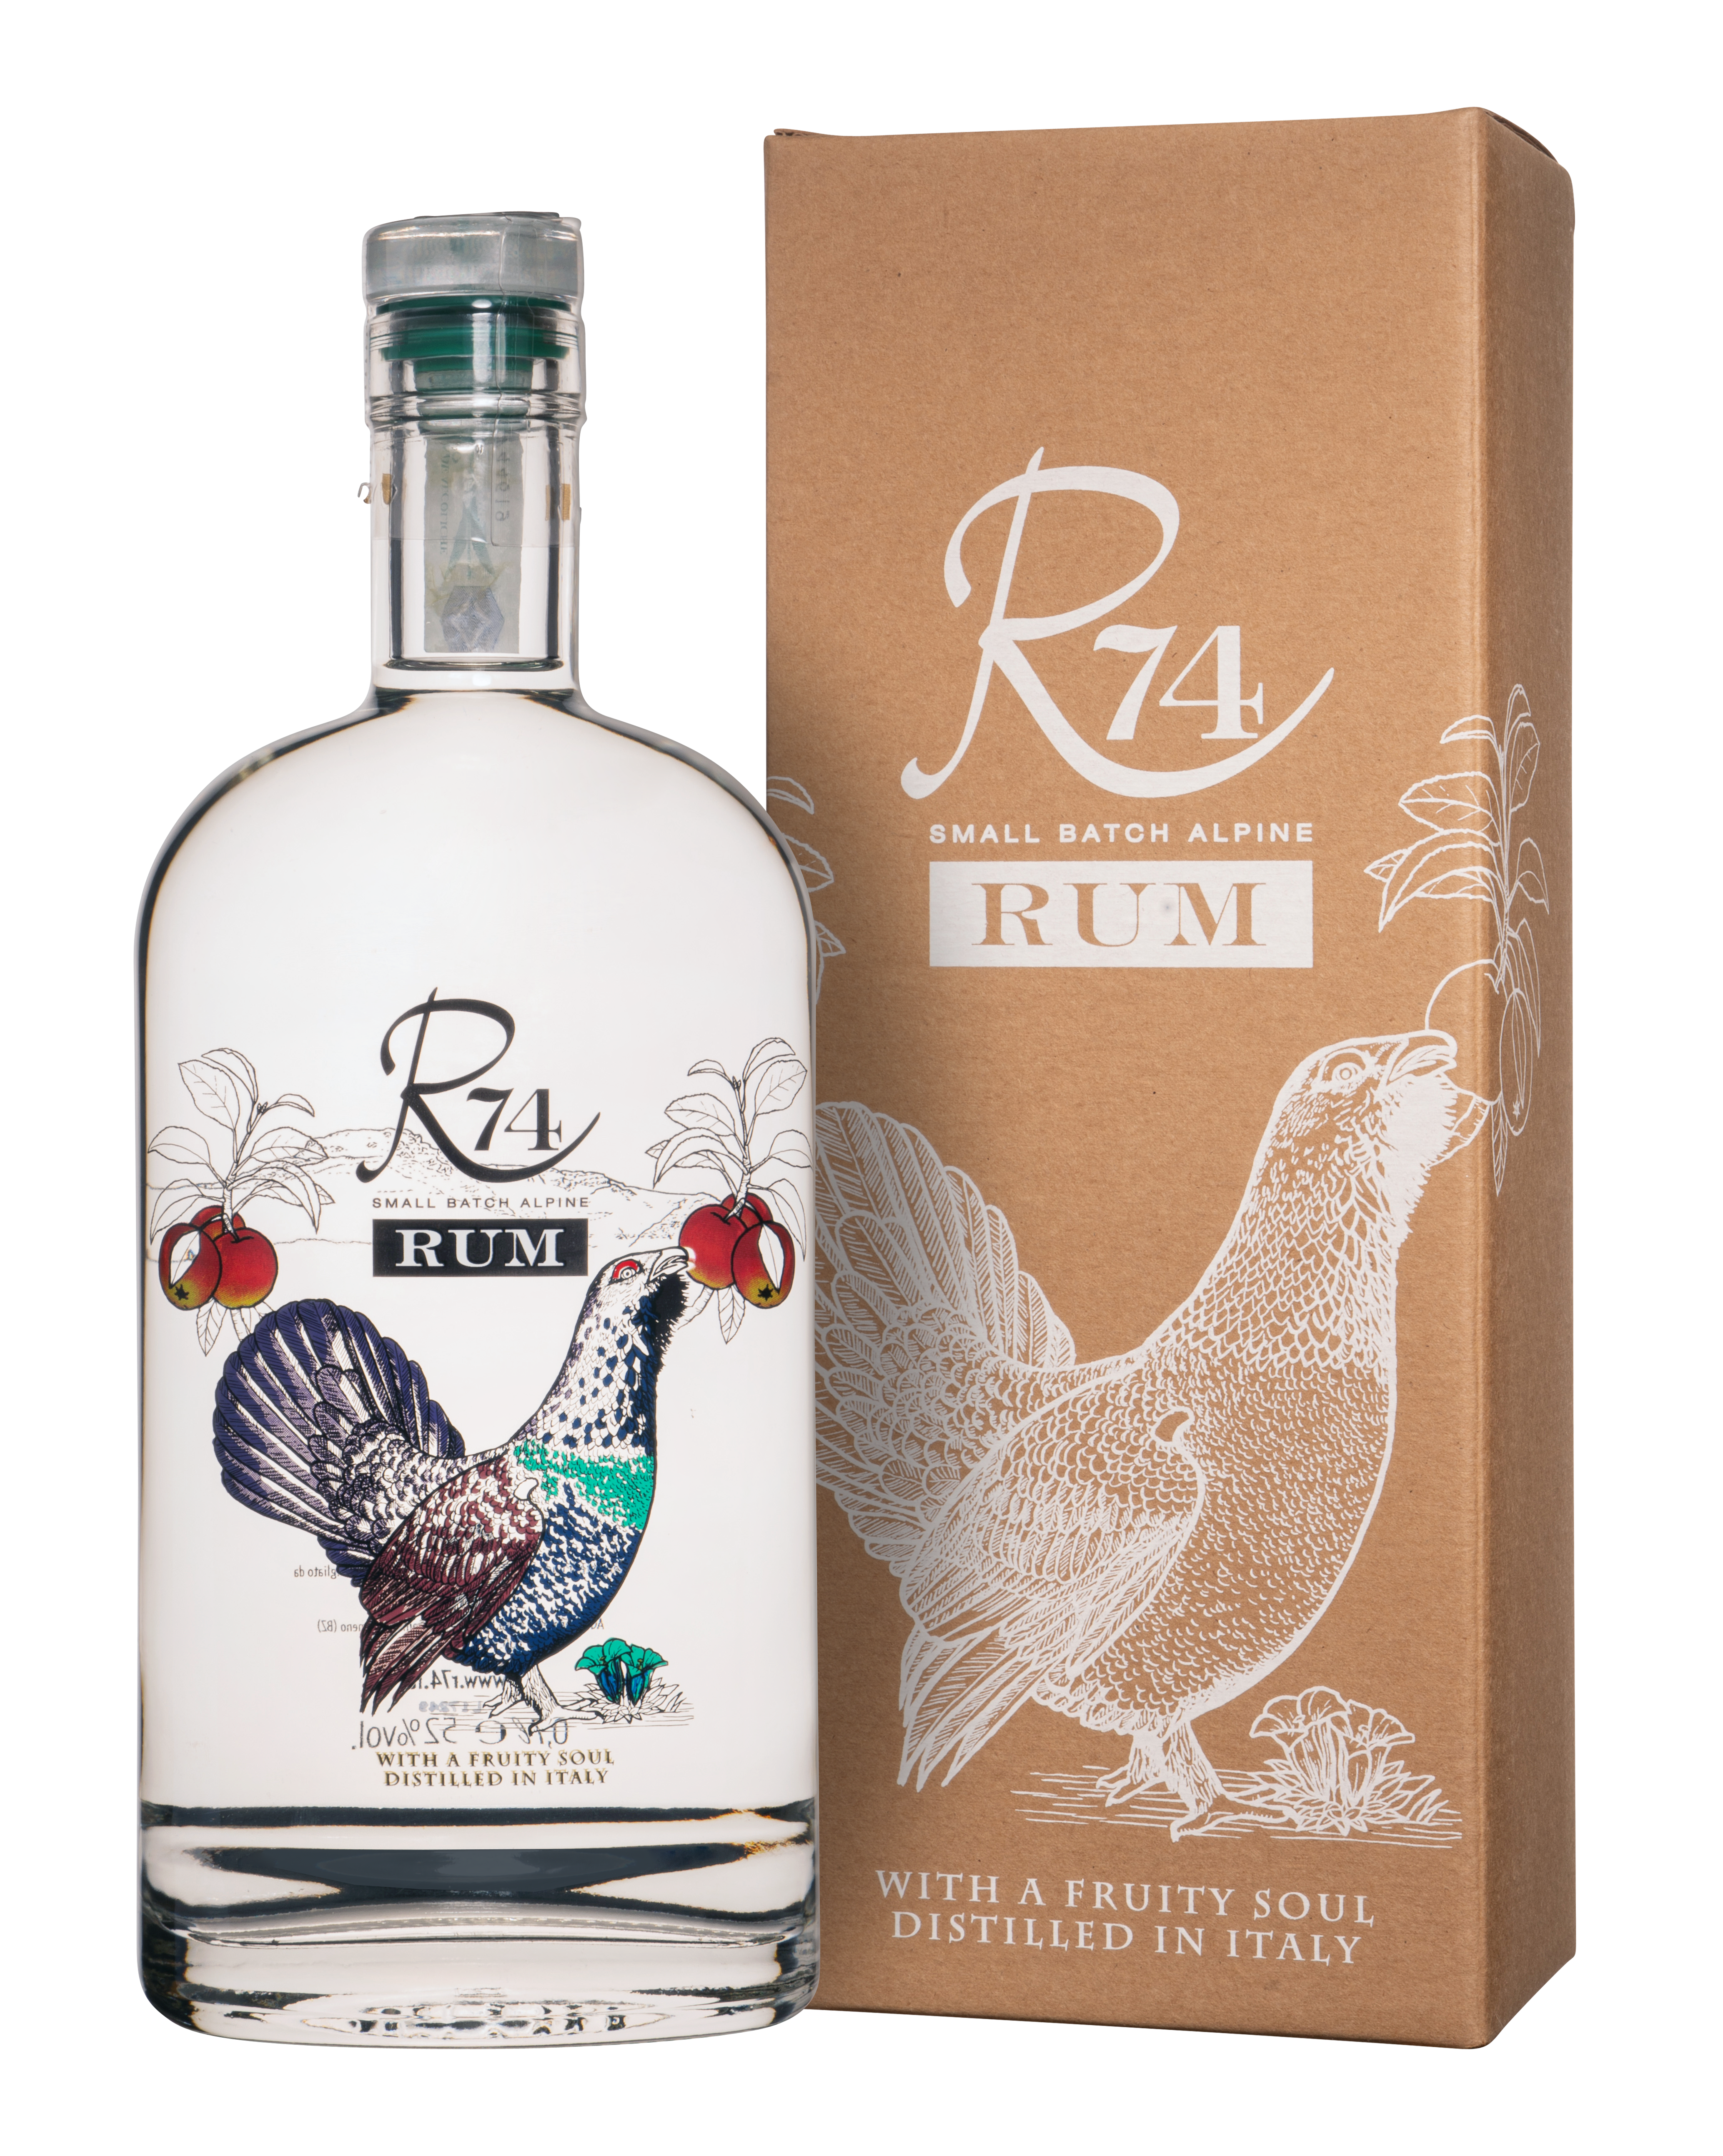 R74 Rum Bianco